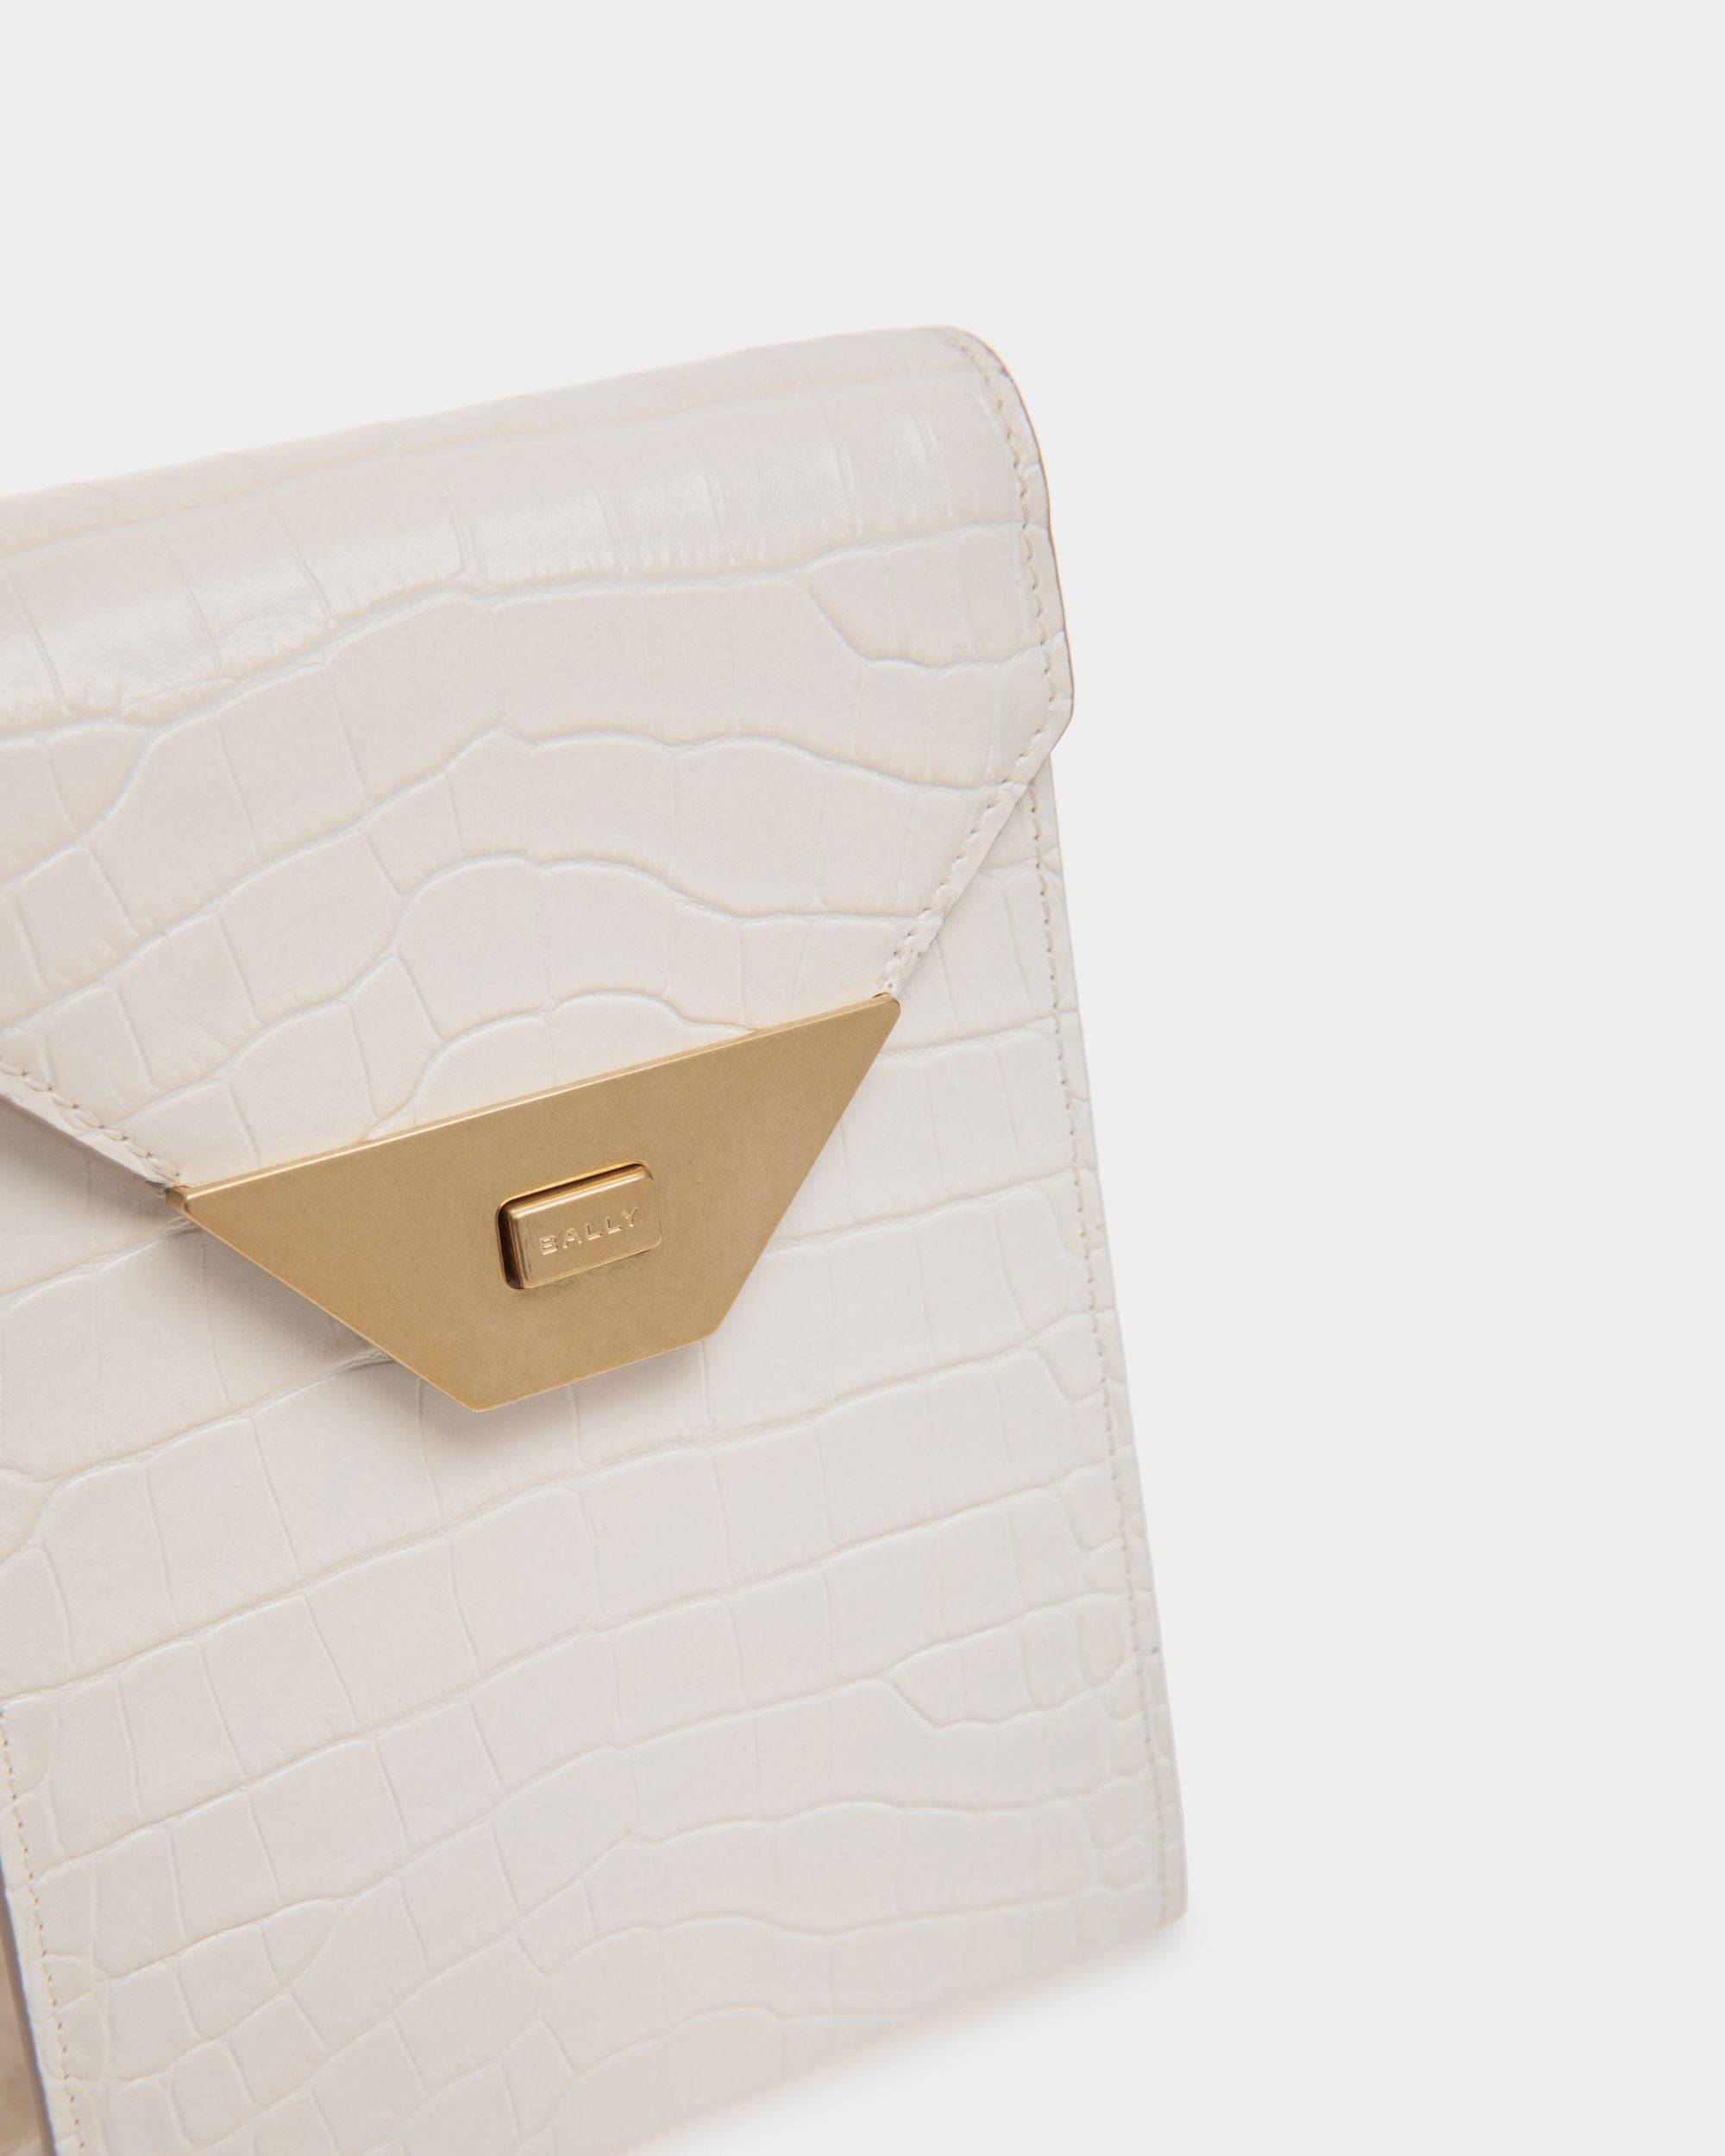 Tilt | Women's Phone Bag in White Crocodile Print Leather | Bally | Still Life Detail